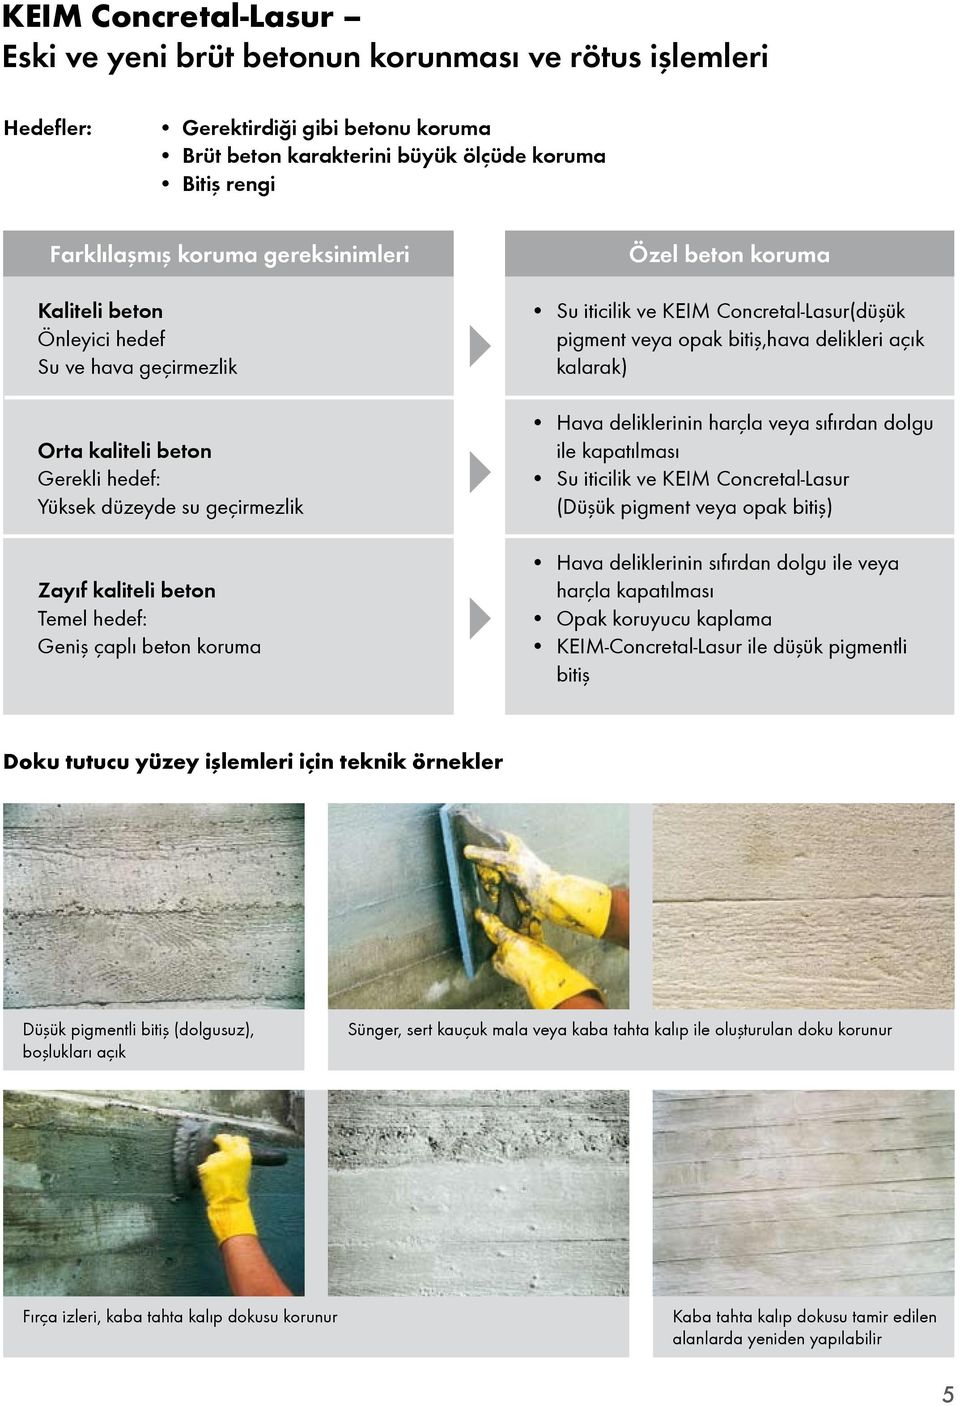 beton koruma Su iticilik ve KEIM Concretal-Lasur(düşük pigment veya opak bitiş,hava delikleri açık kalarak) Hava deliklerinin harçla veya sıfırdan dolgu ile kapatılması Su iticilik ve KEIM